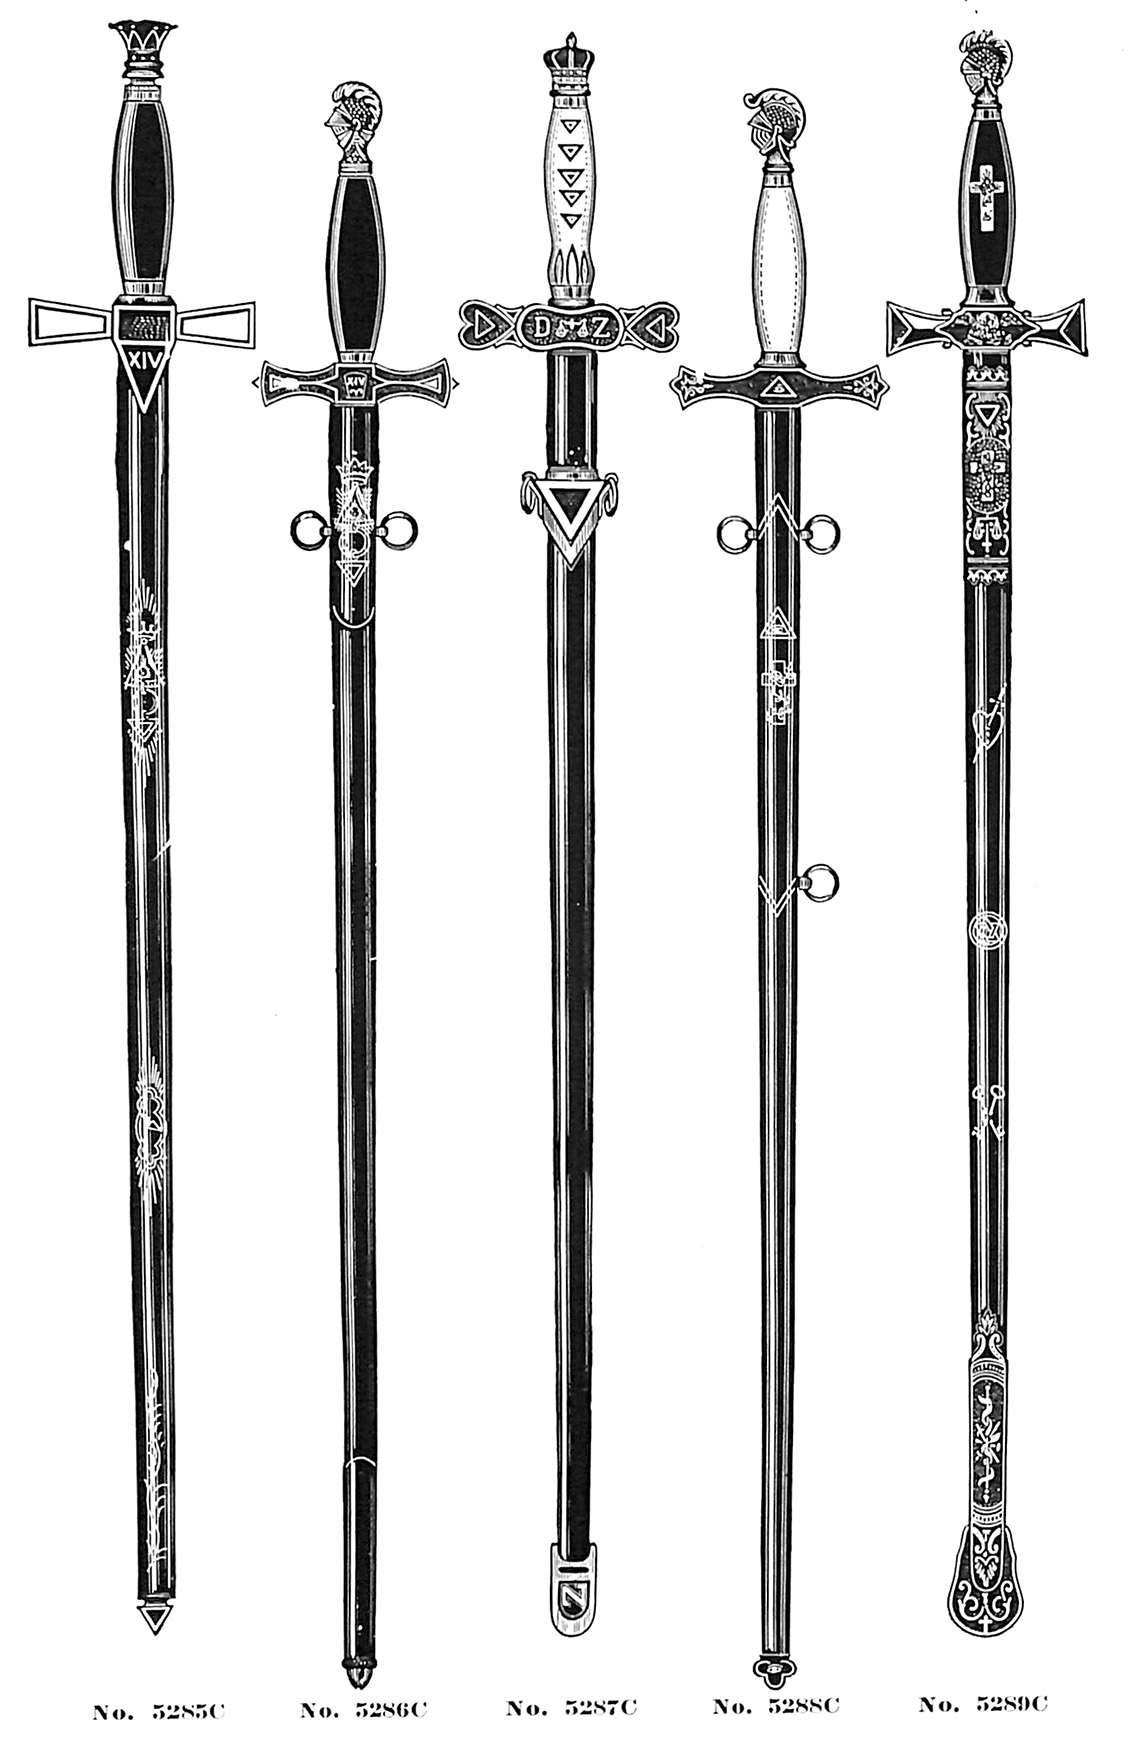 Rose Croix swords no. 5285C-5289C